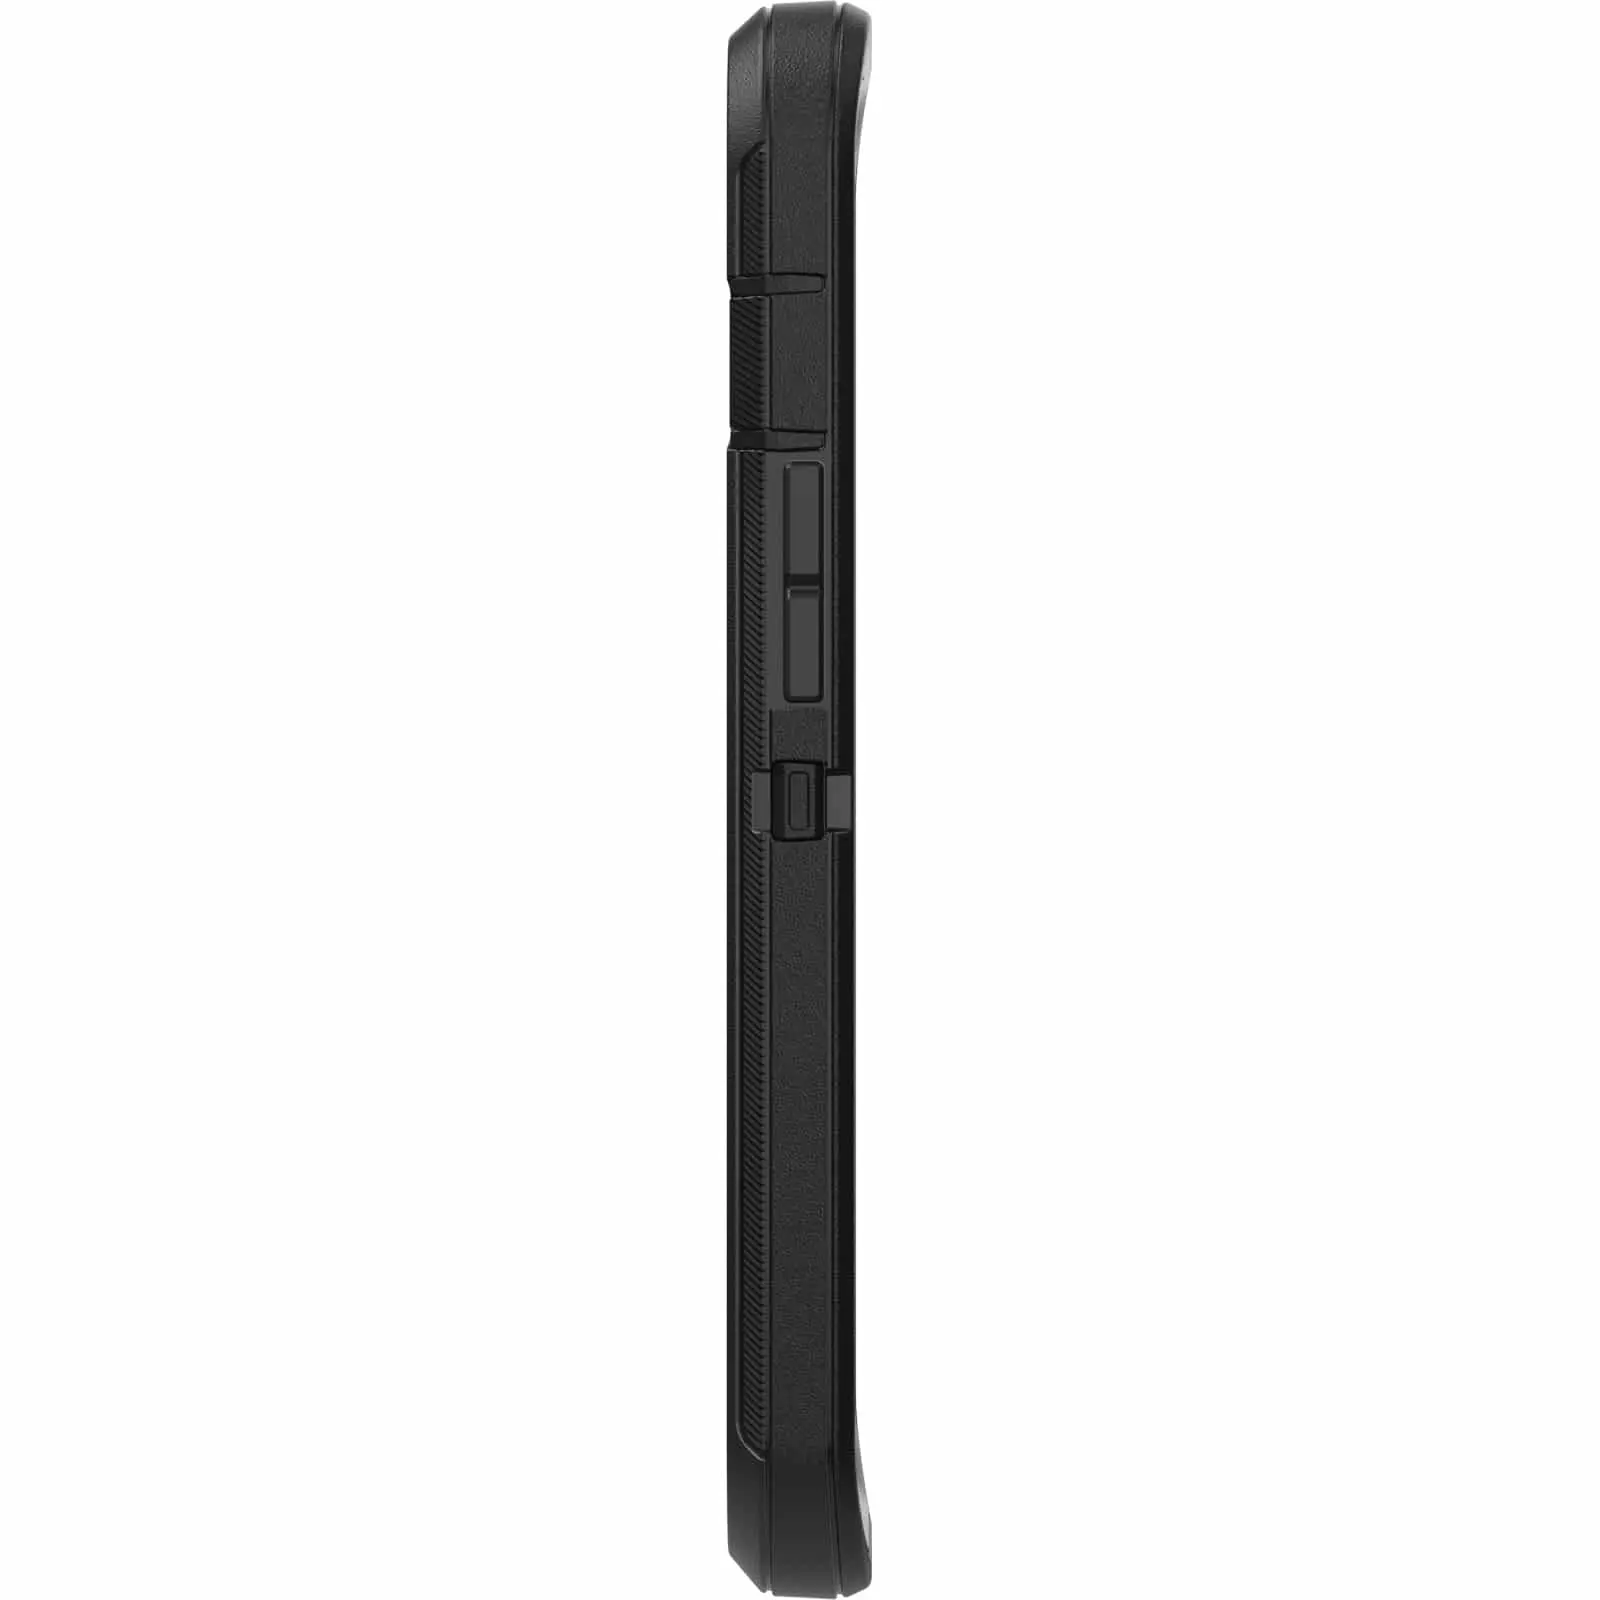 เคส OtterBox รุ่น Defender - iPhone 13 Mini - สีดำ